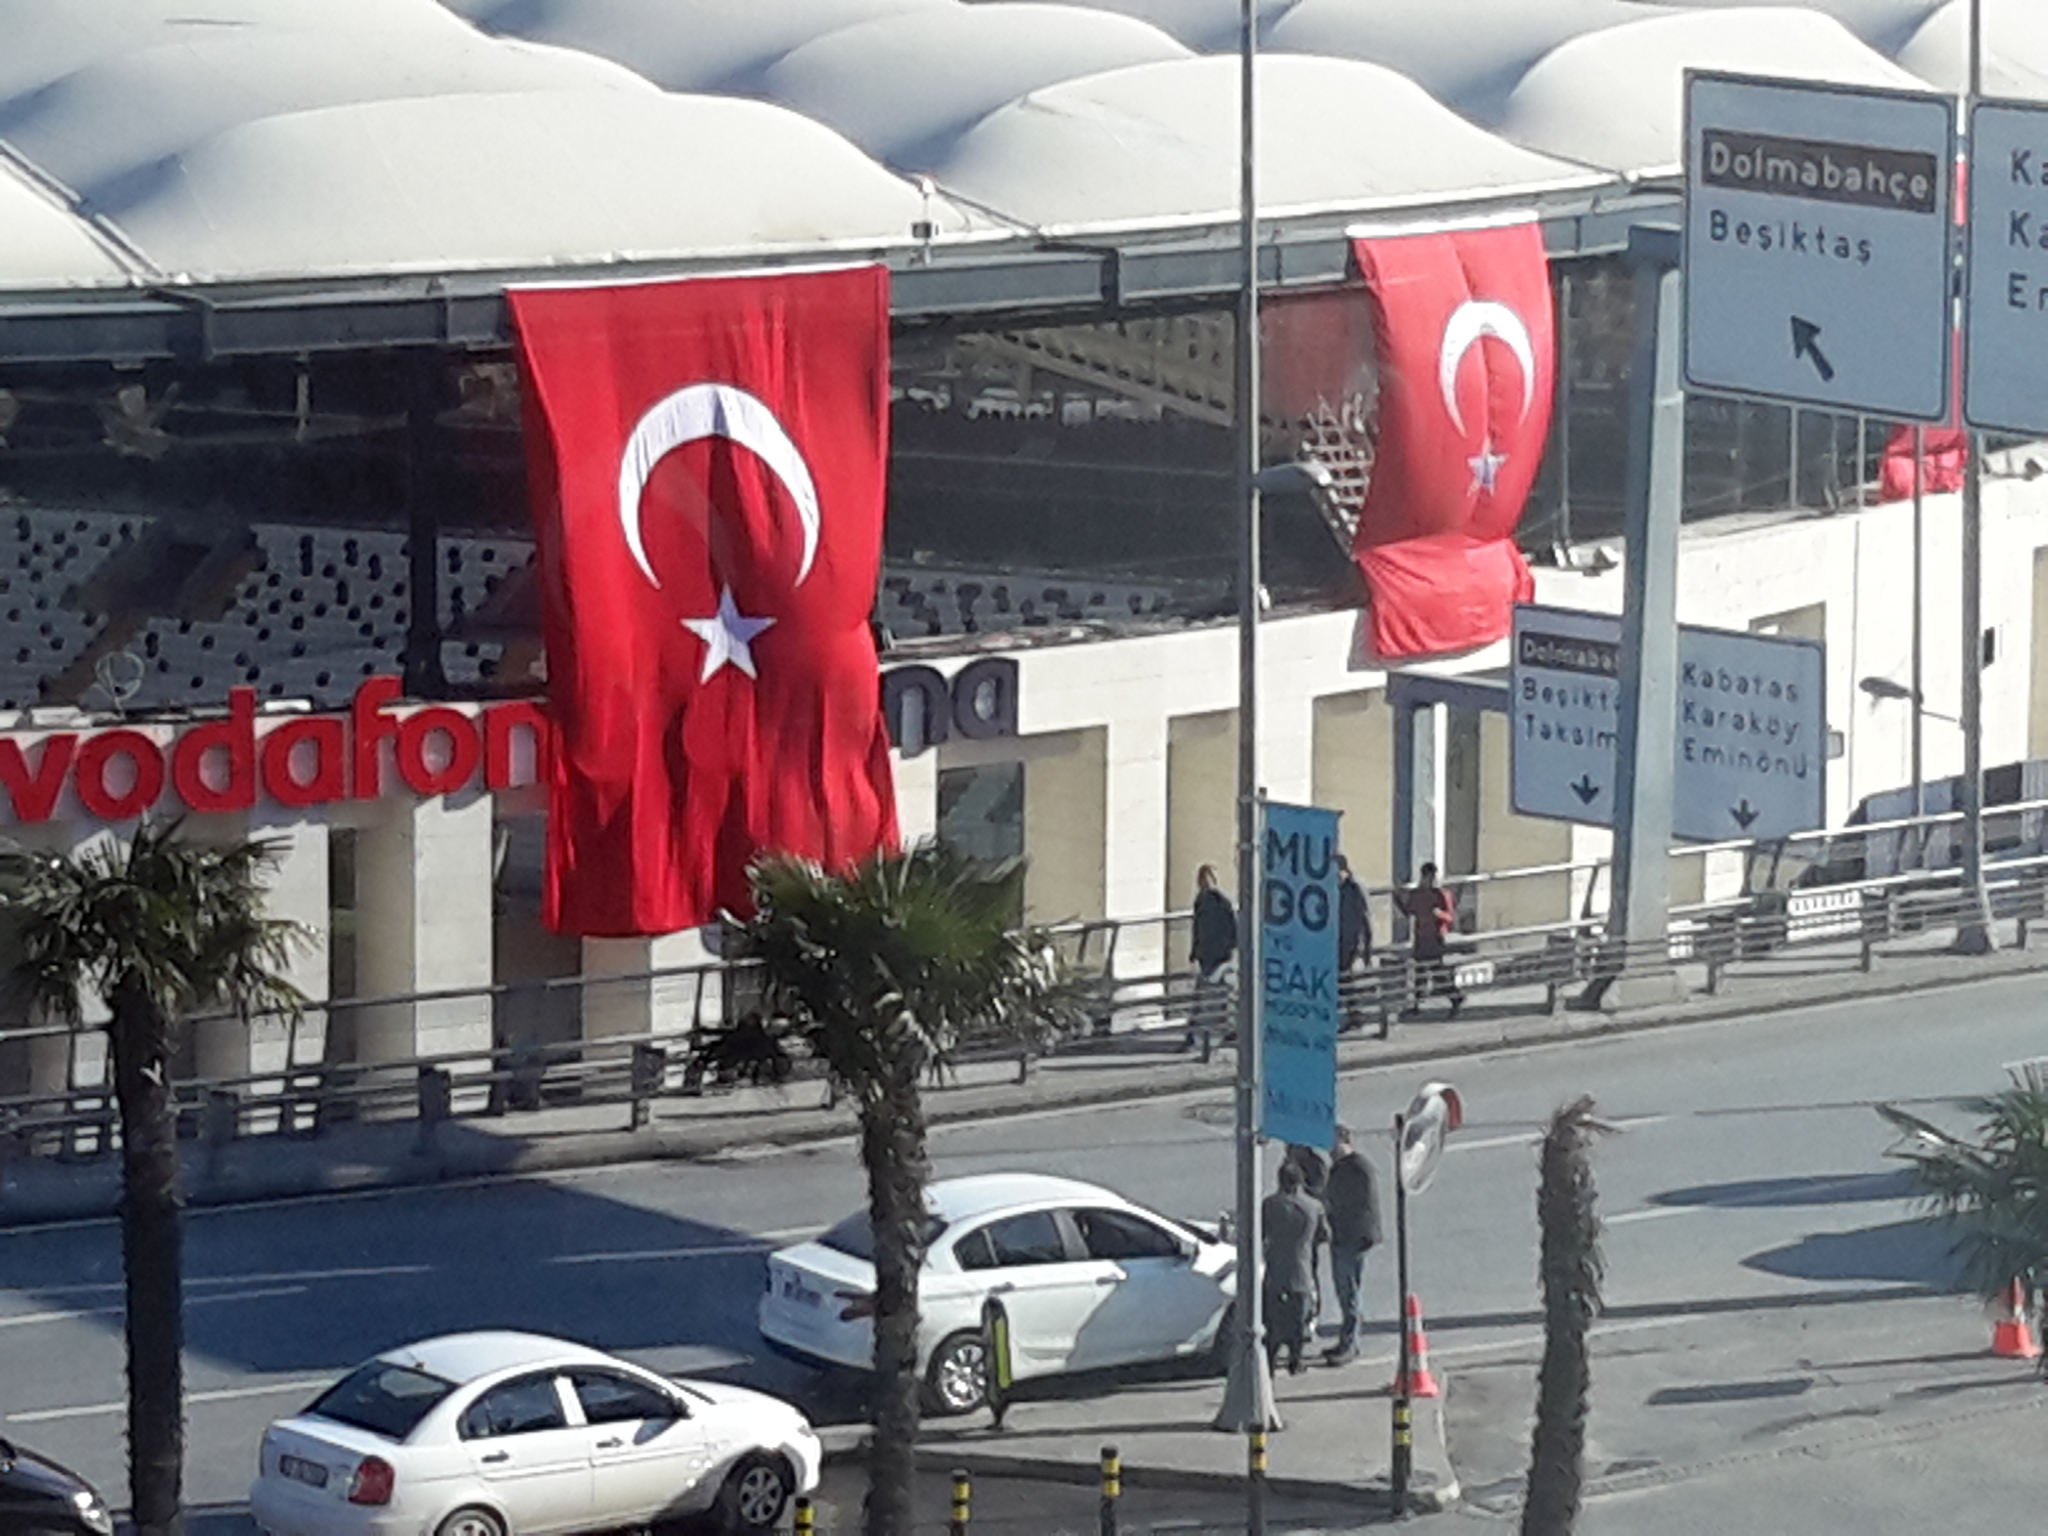 Crônicas de Istambul: Depois da tragédia, as homenagens e a solidariedade